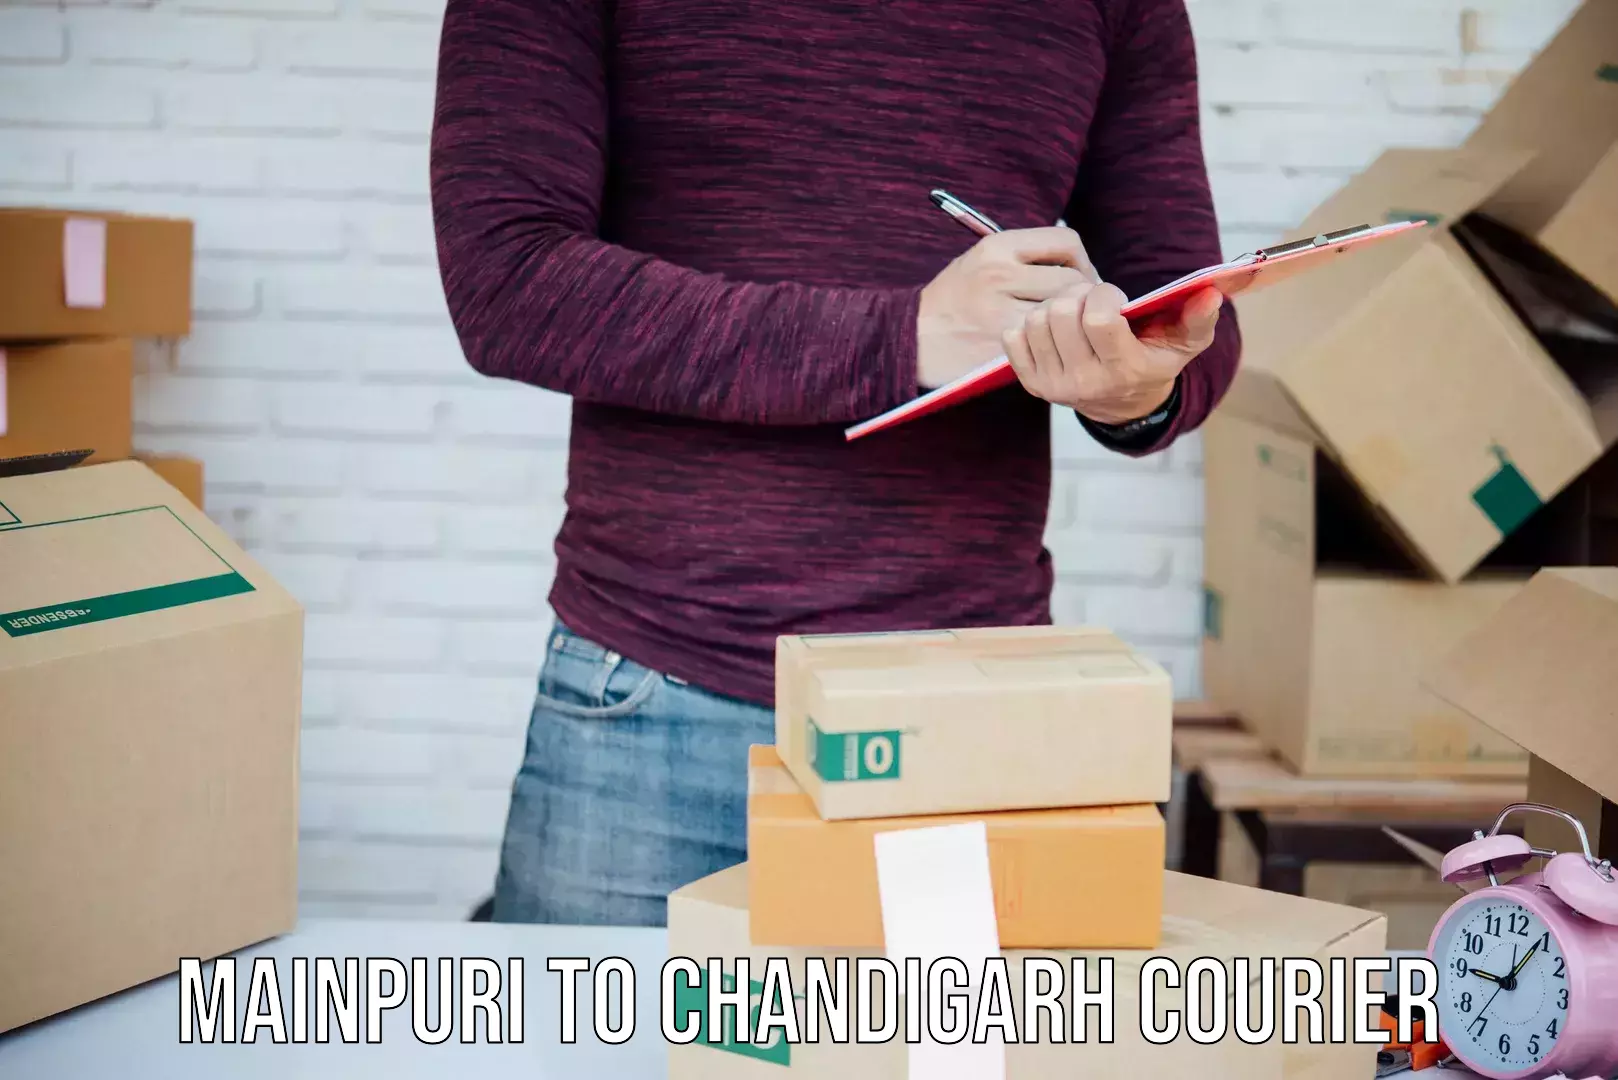 Urgent courier needs Mainpuri to Chandigarh